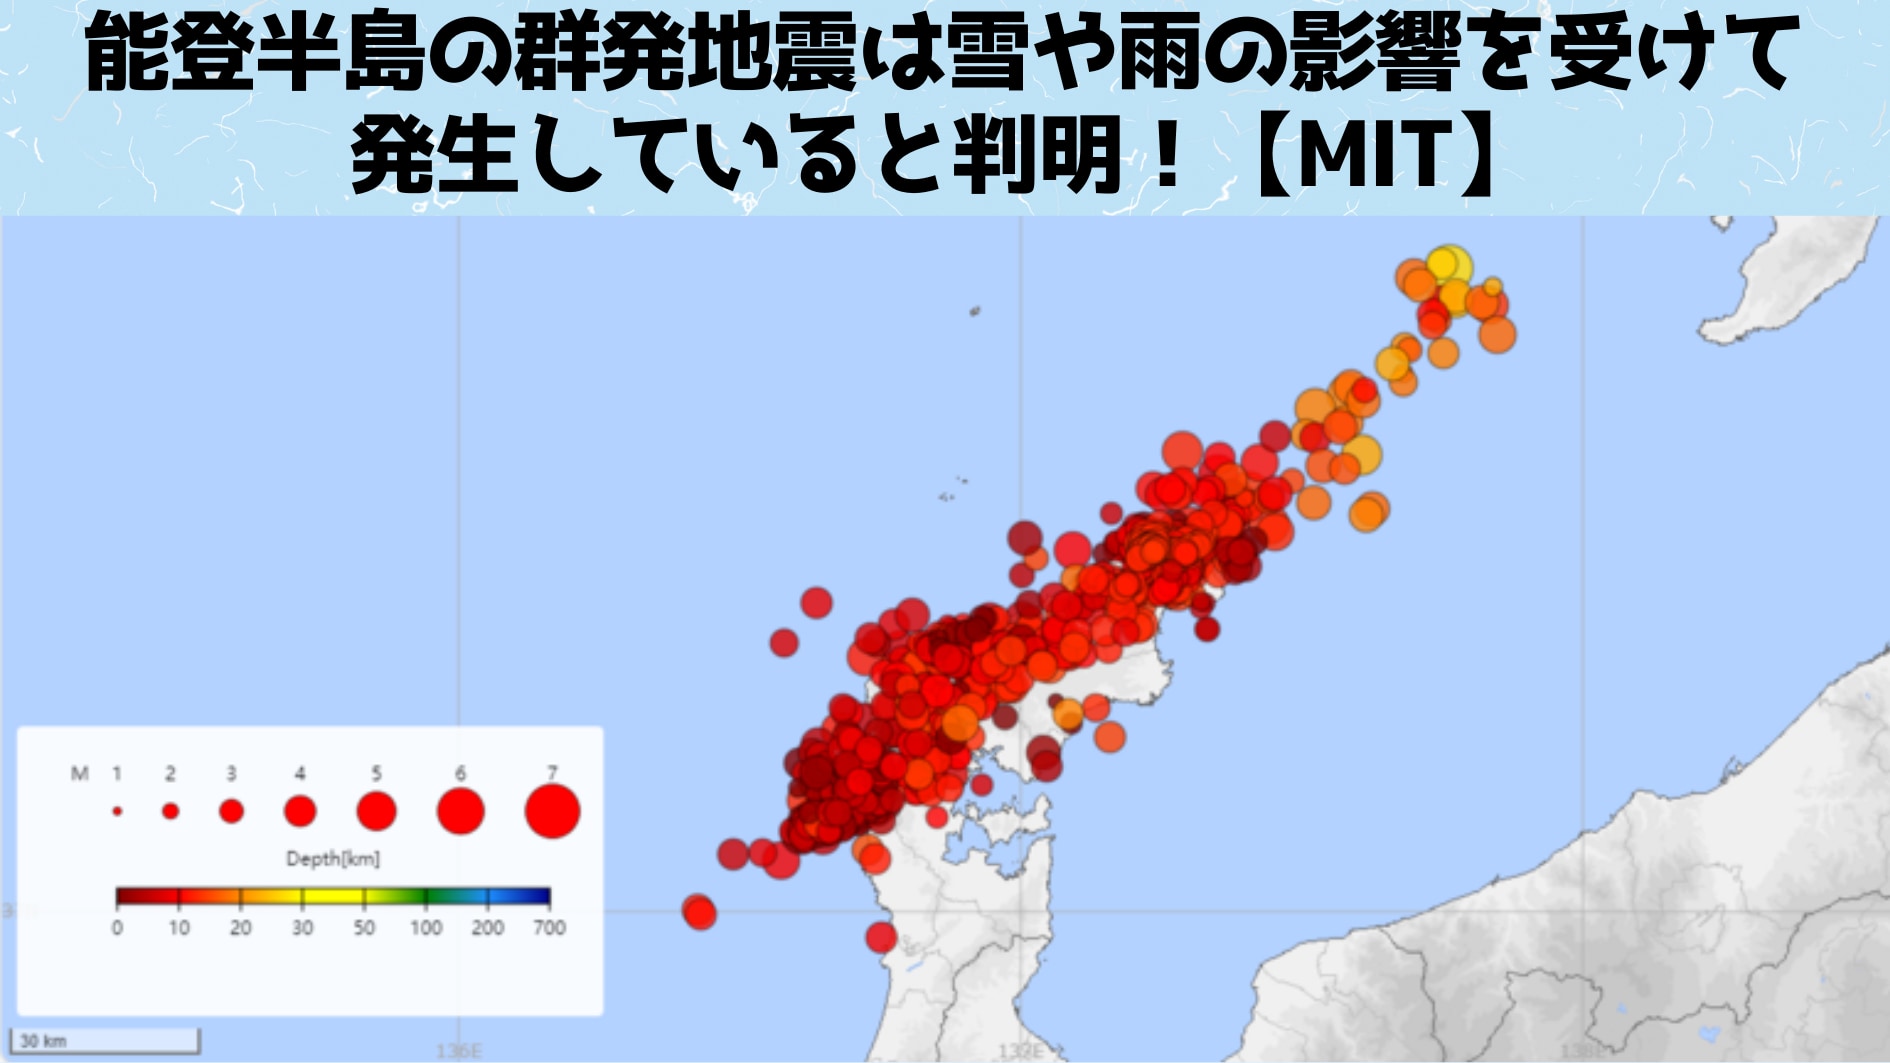 能登半島の地震は雪や雨の影響を受けて発生していると判明！【MIT】